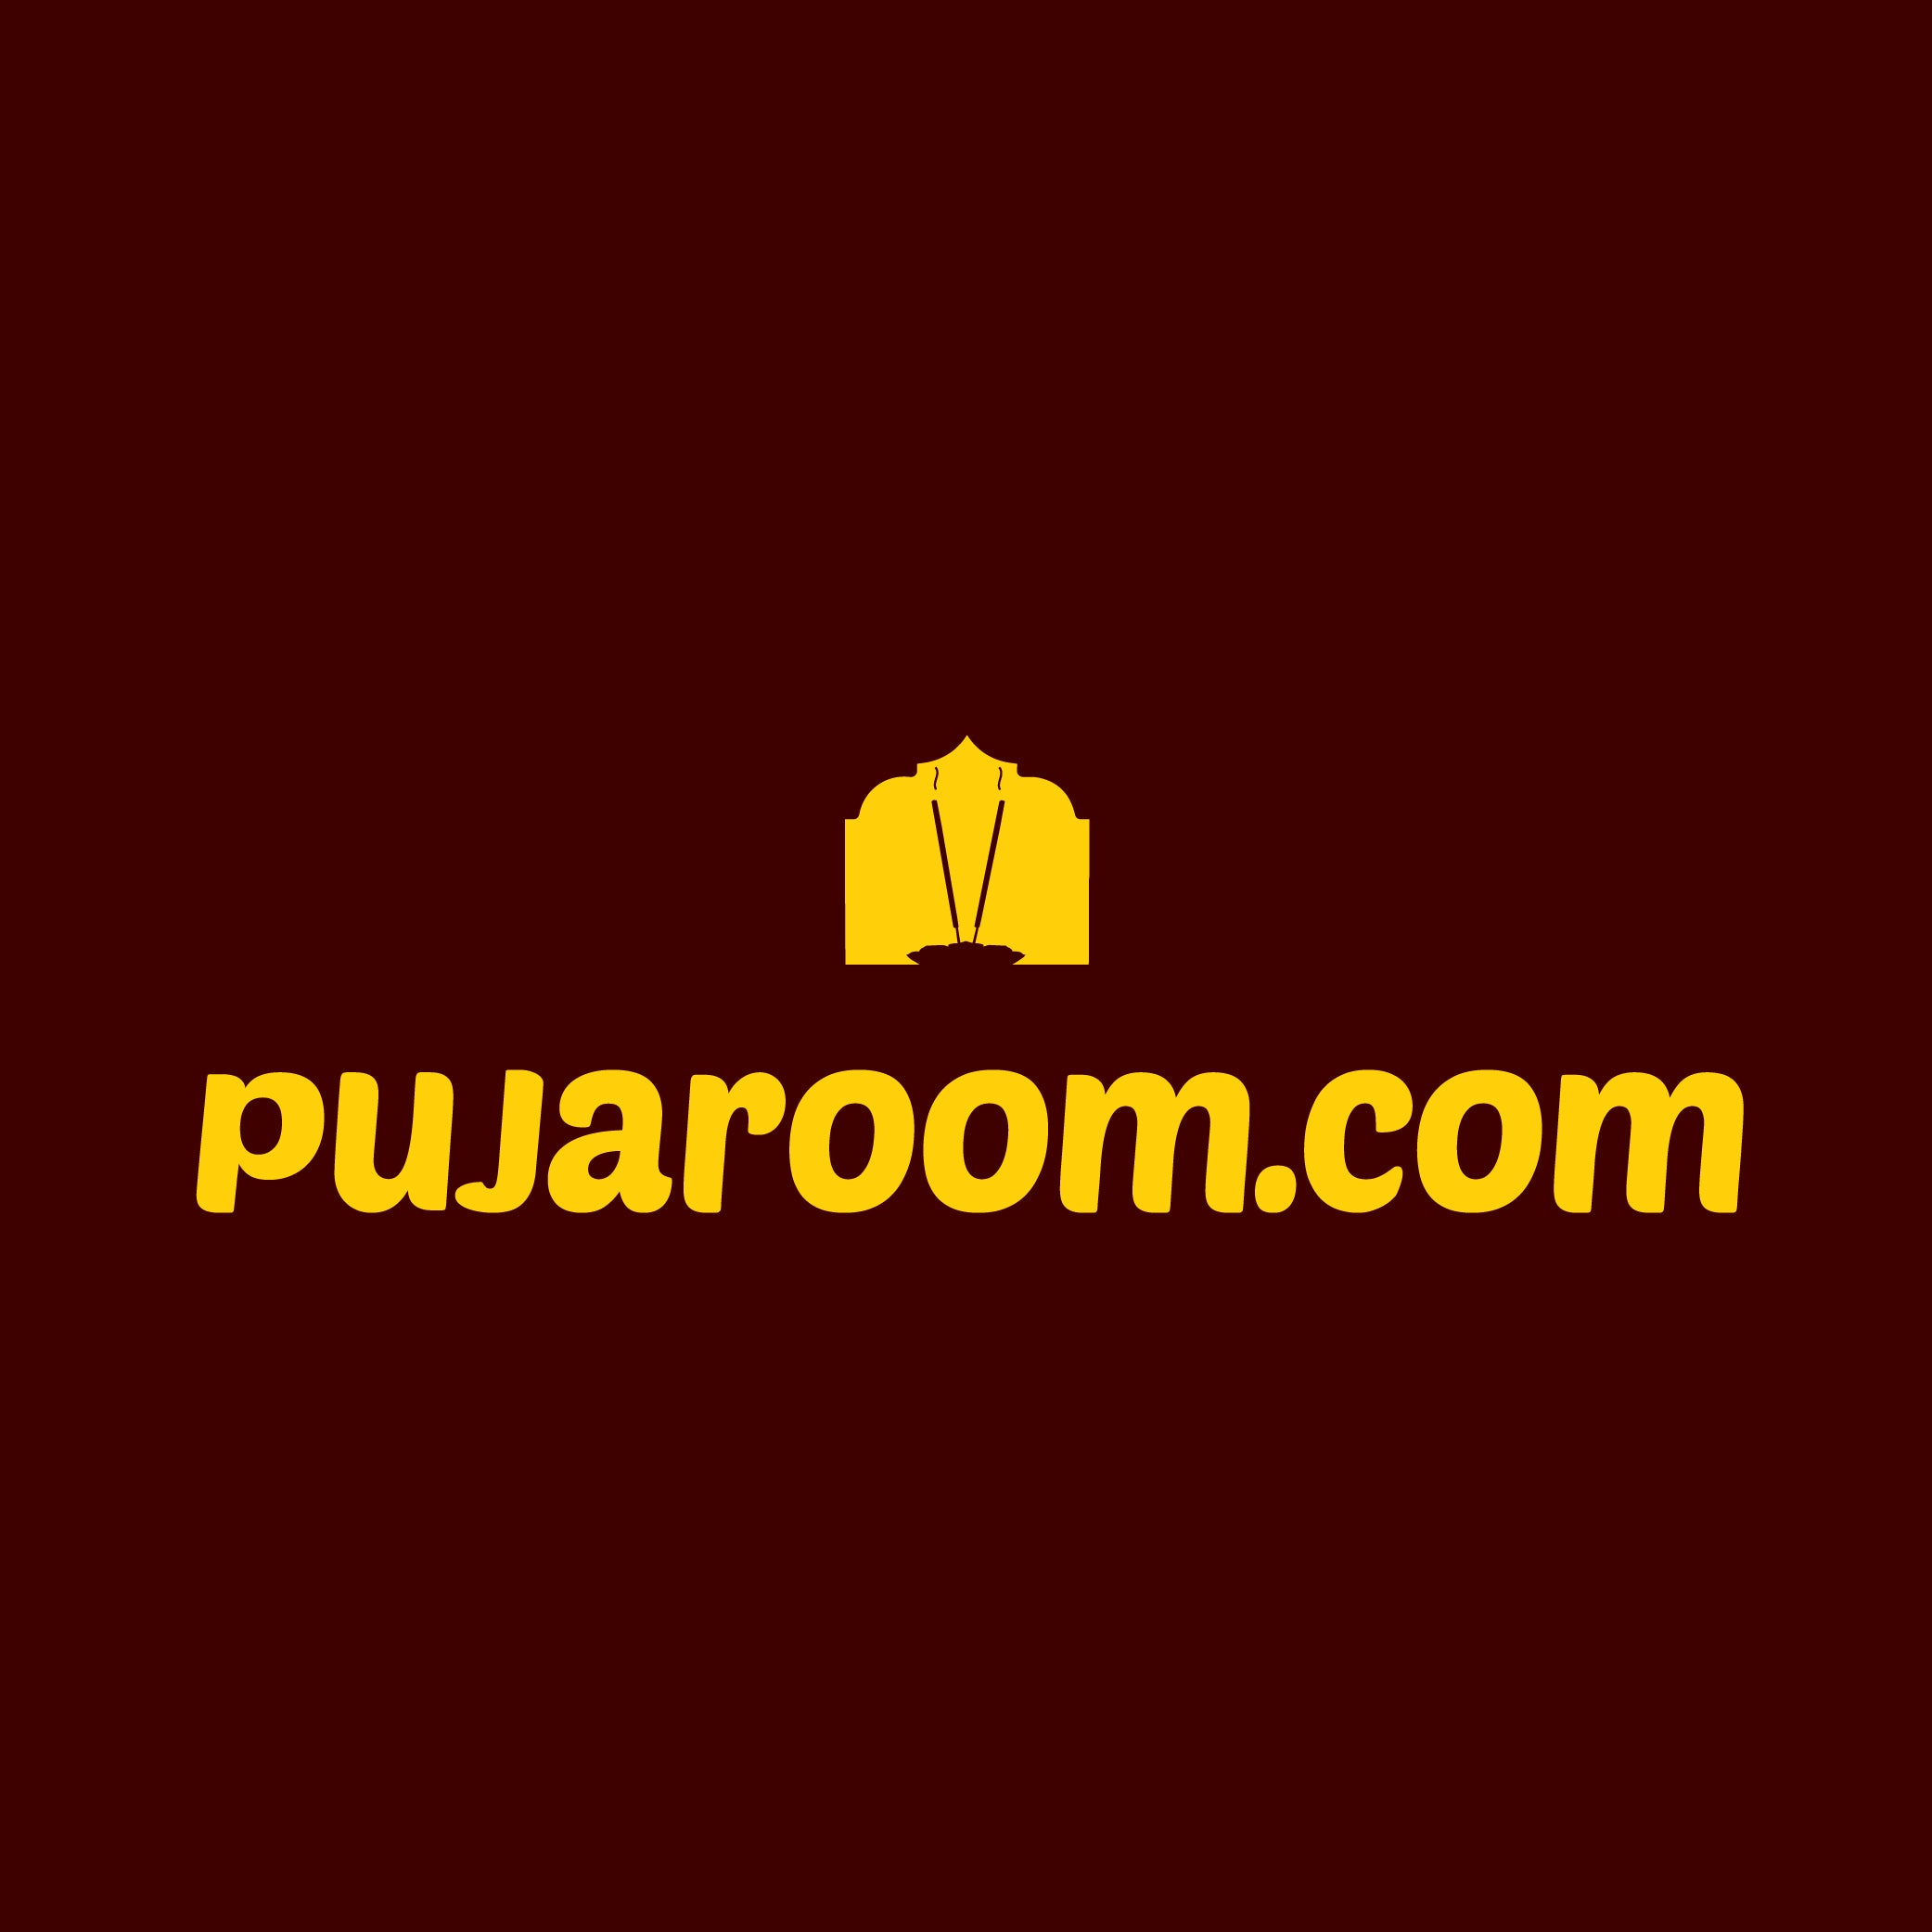 pujaroom.com